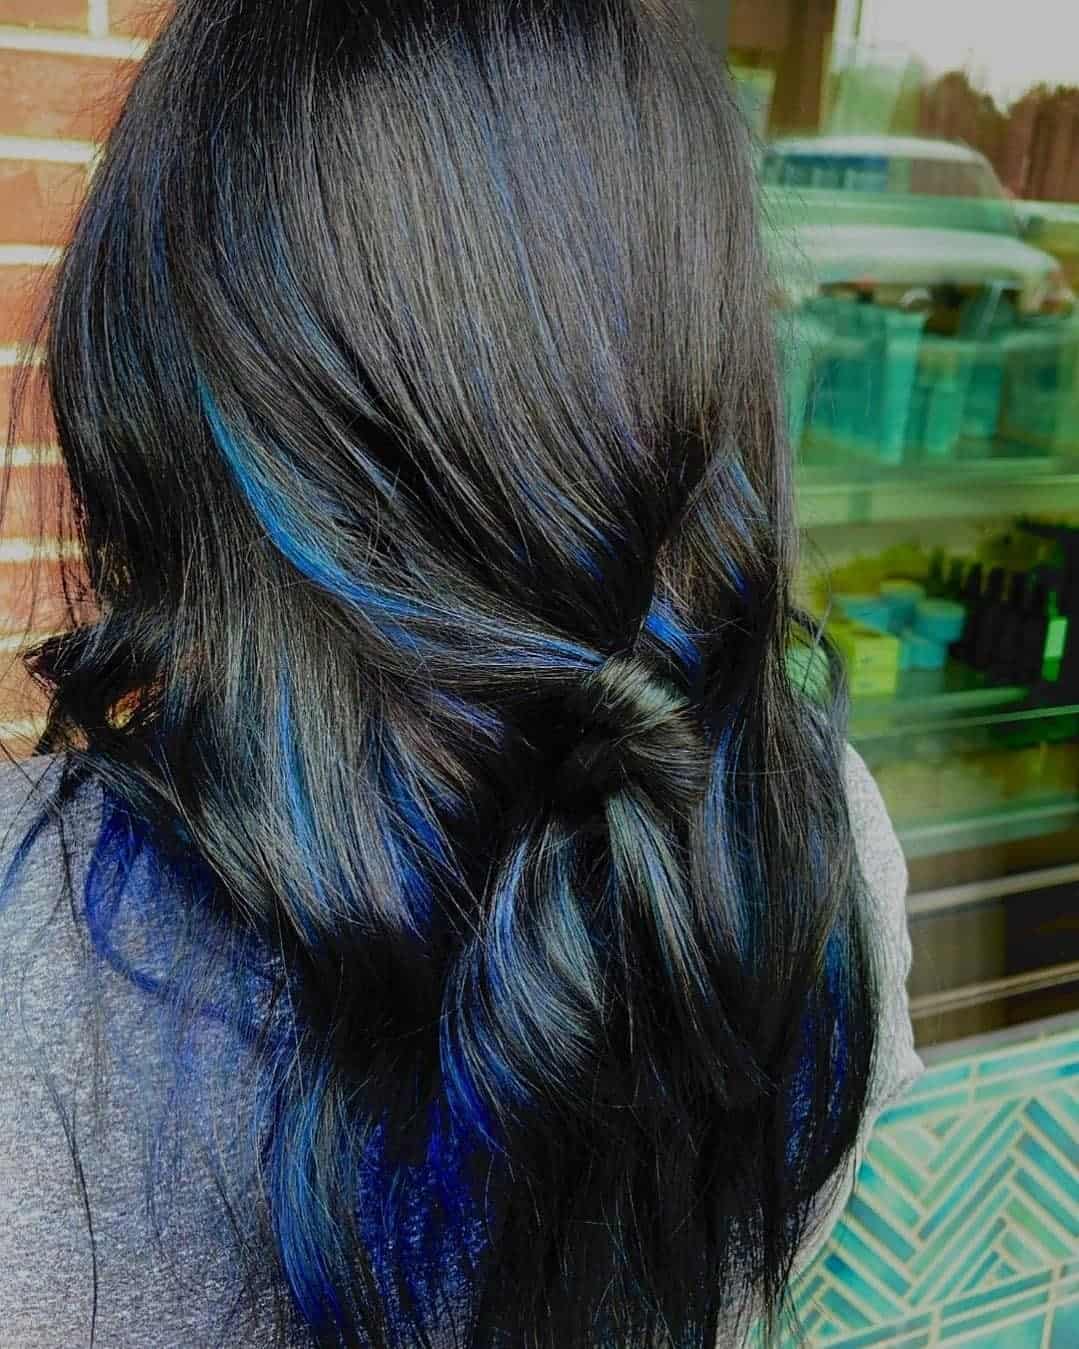 Black & Blue Smooth Hair Look 